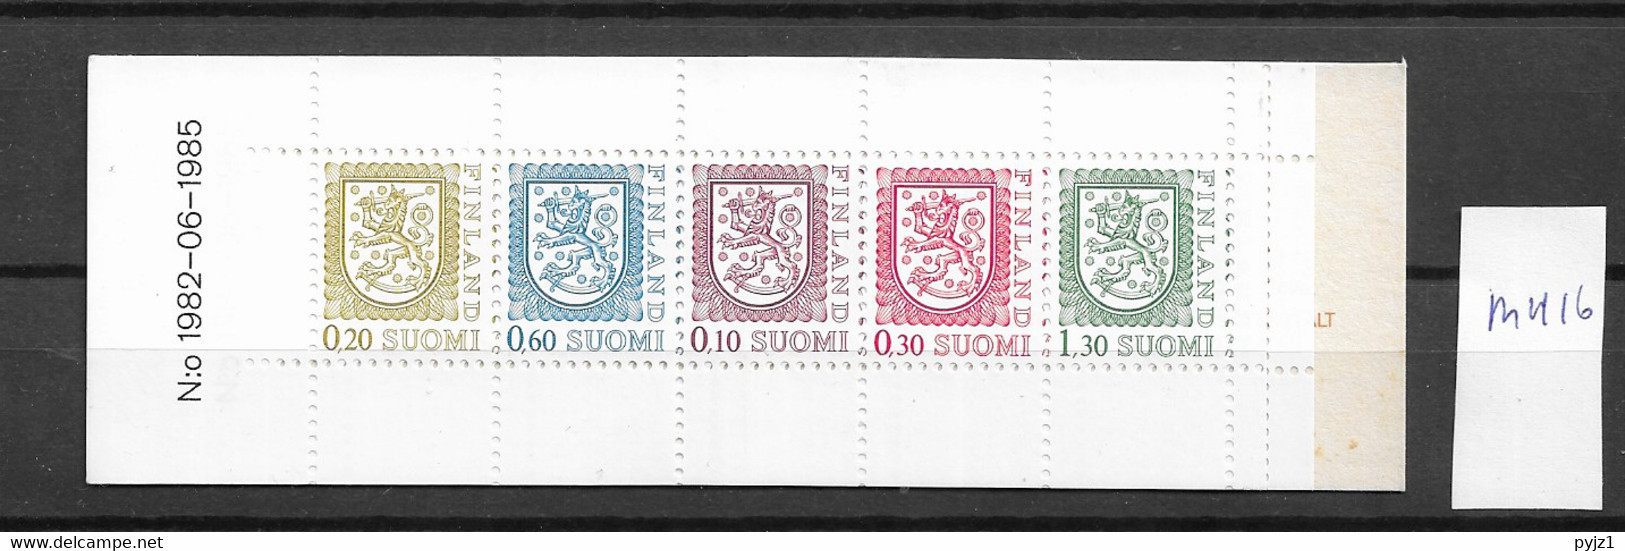 1985 MNH  Booklet, Finland MH 16, Postfris** - Postzegelboekjes